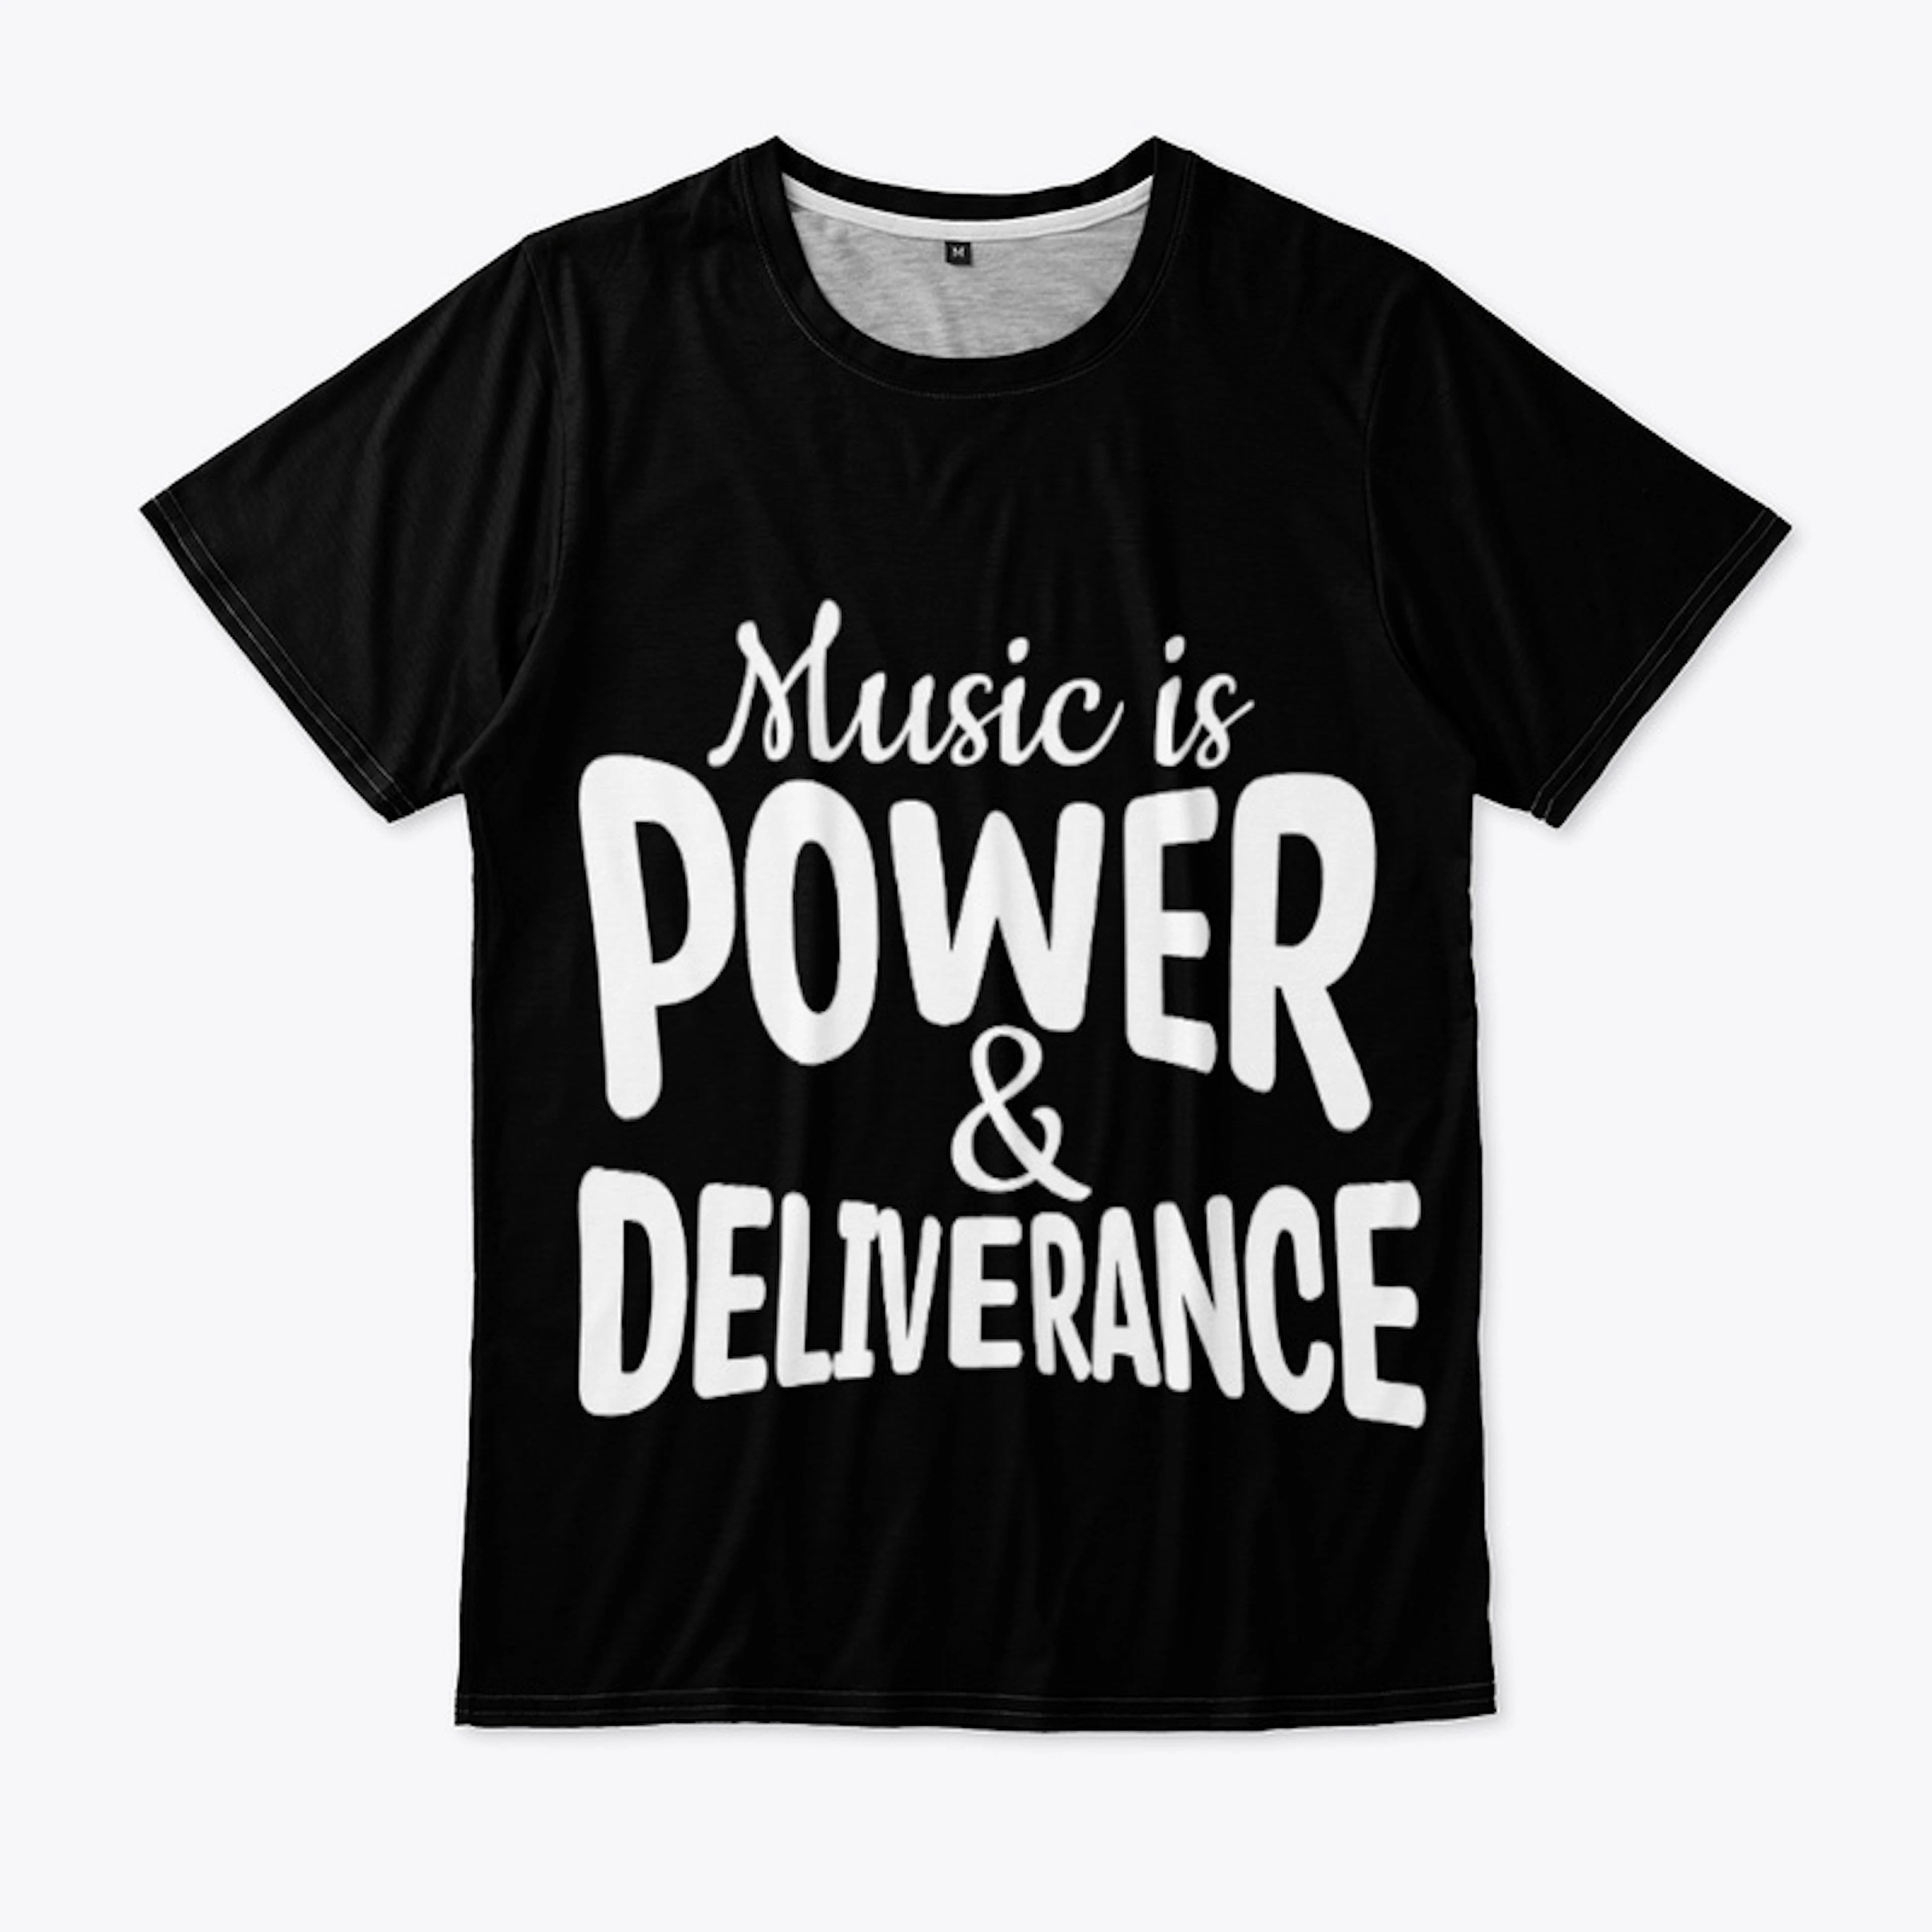 Music Is Power & Deliverance (Dark)